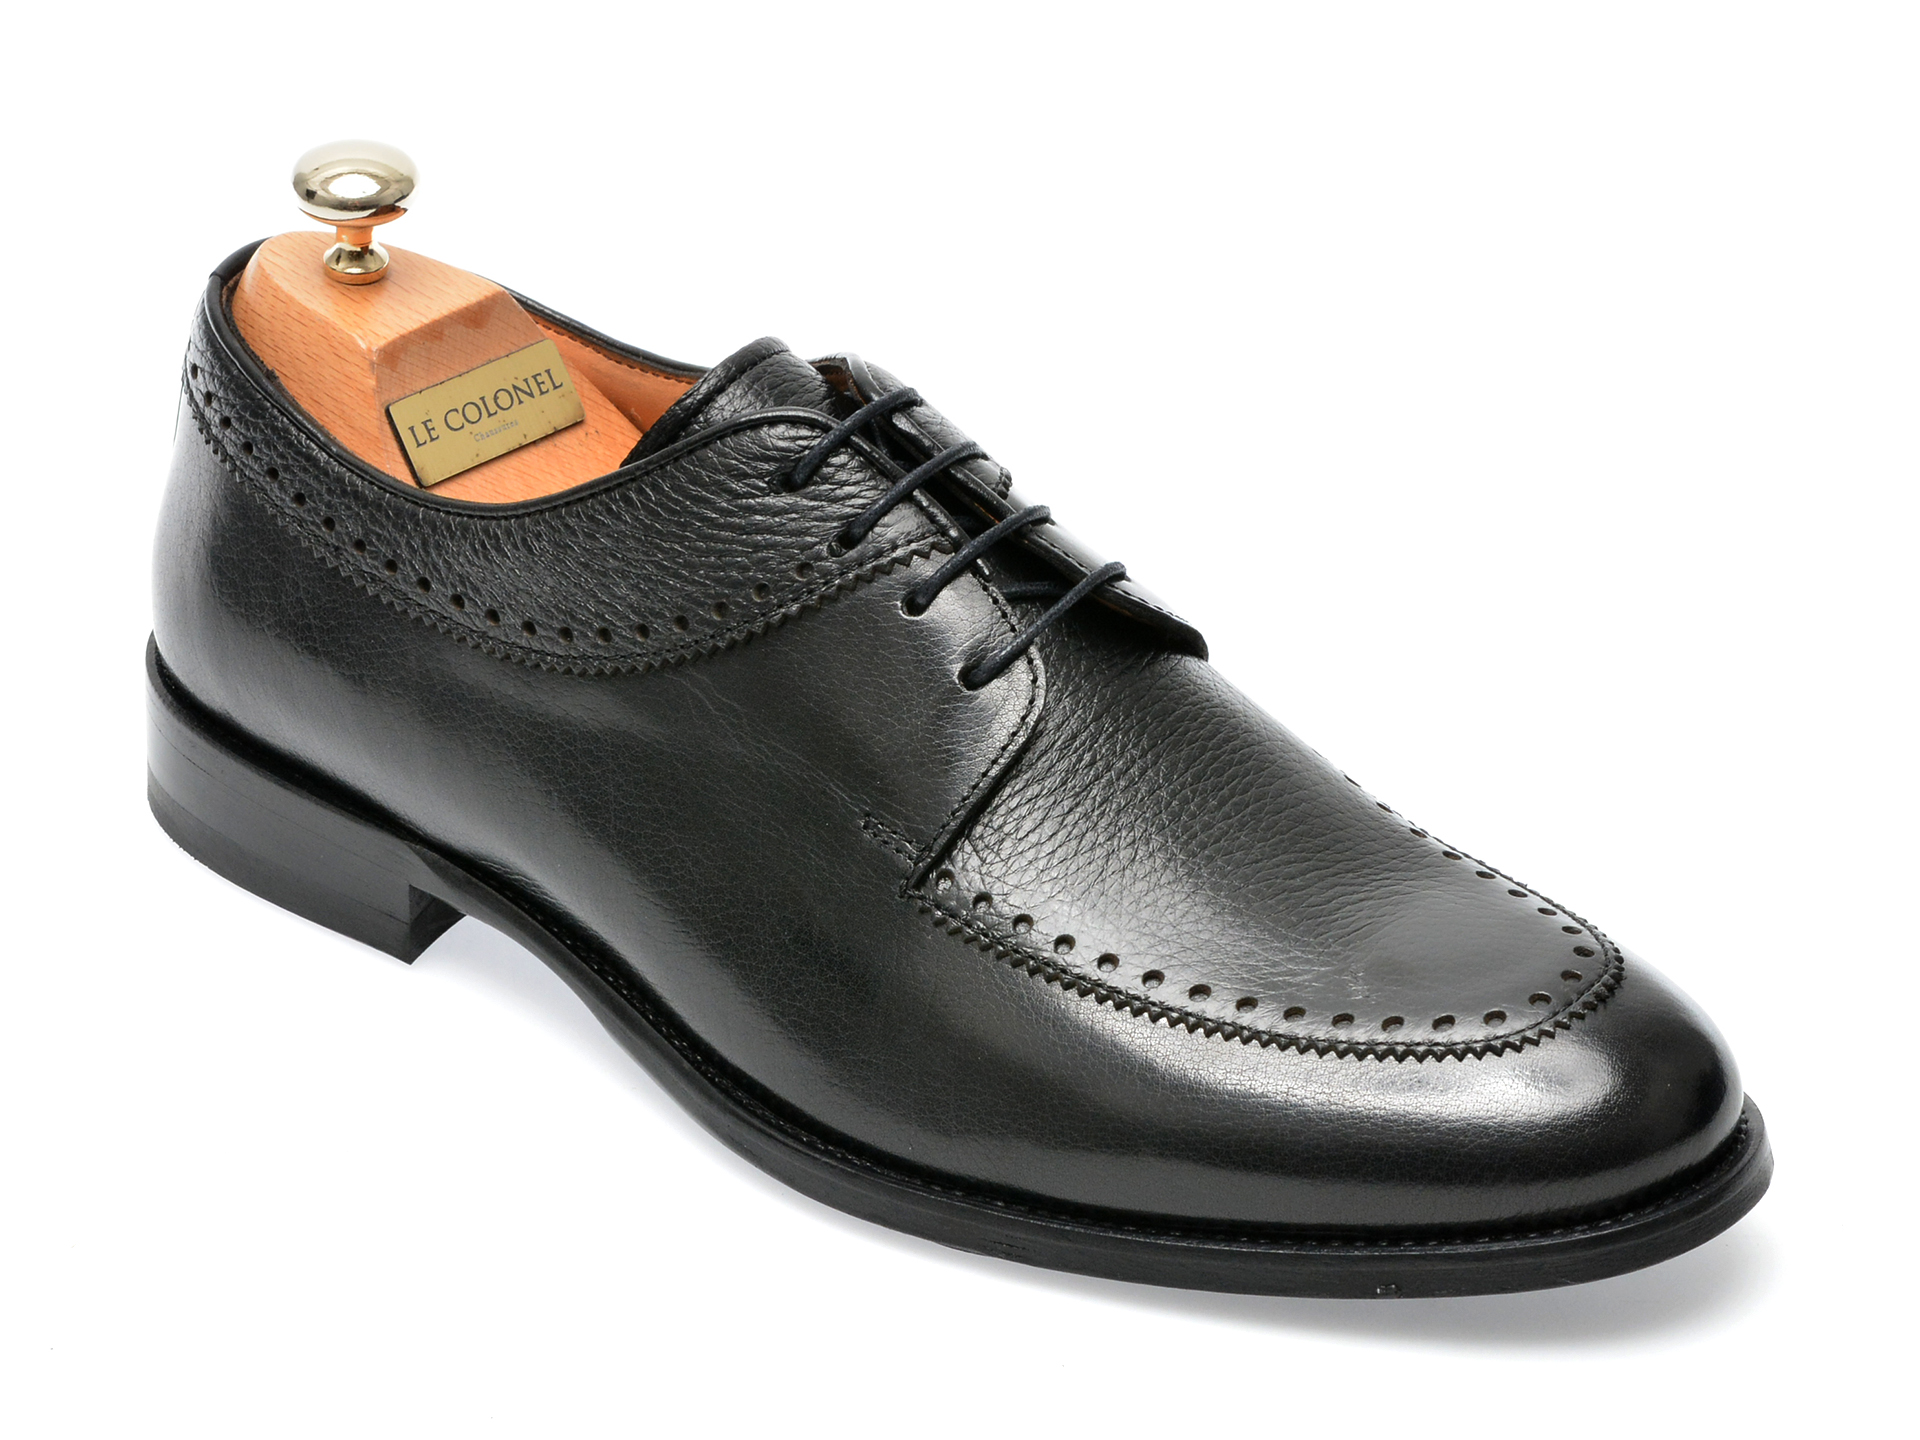 Pantofi LE COLONEL negri, 45266, din piele naturala barbati 2023-09-21